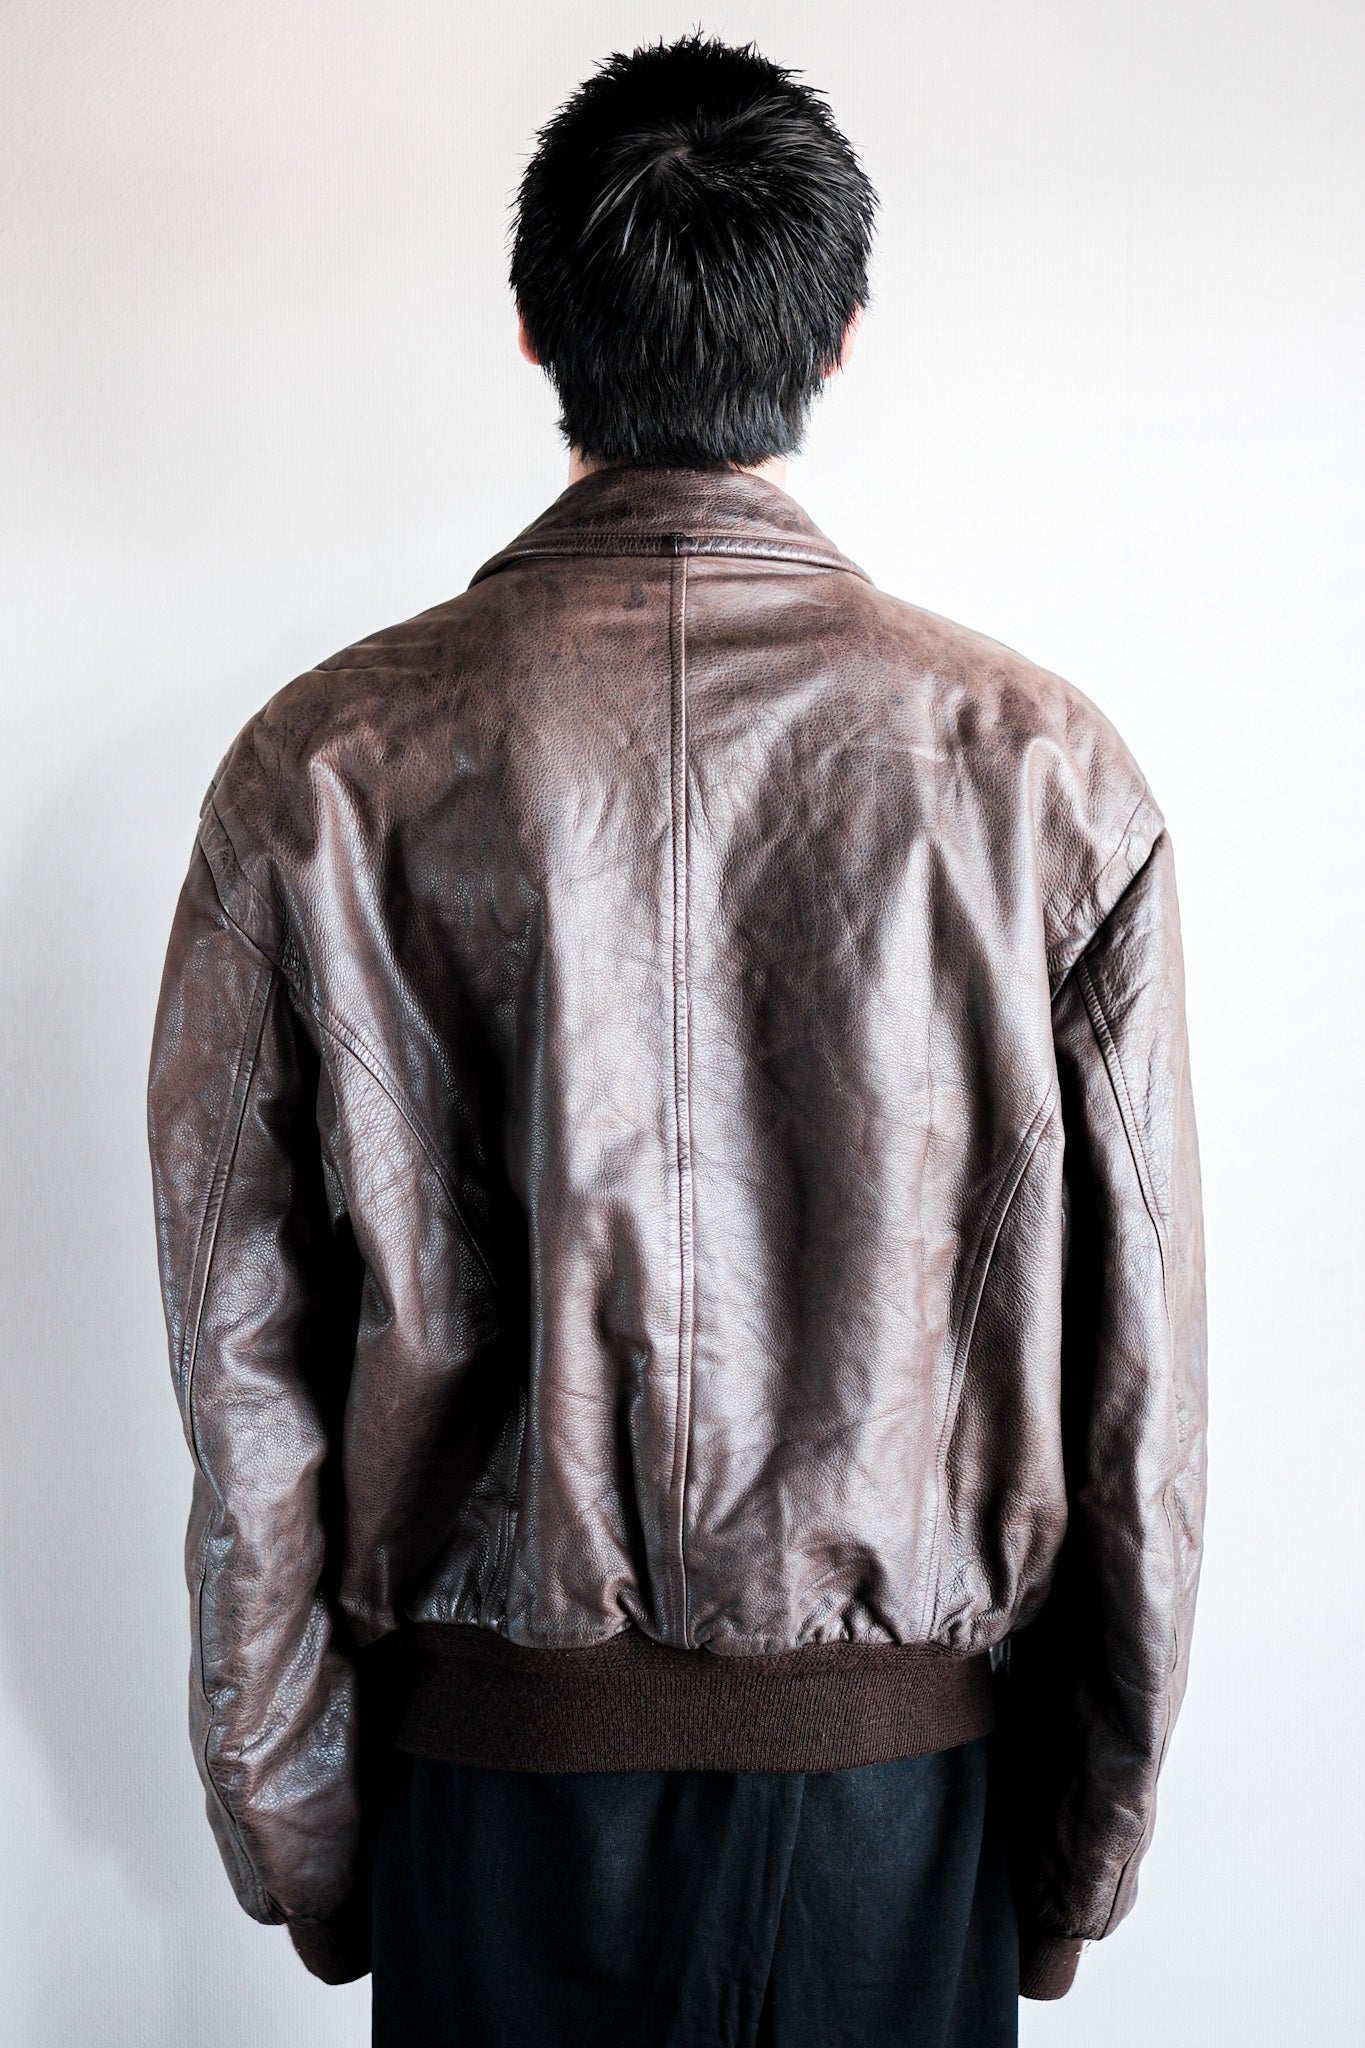 [〜90年代]舊的Seraphin皮夾克尺寸。52